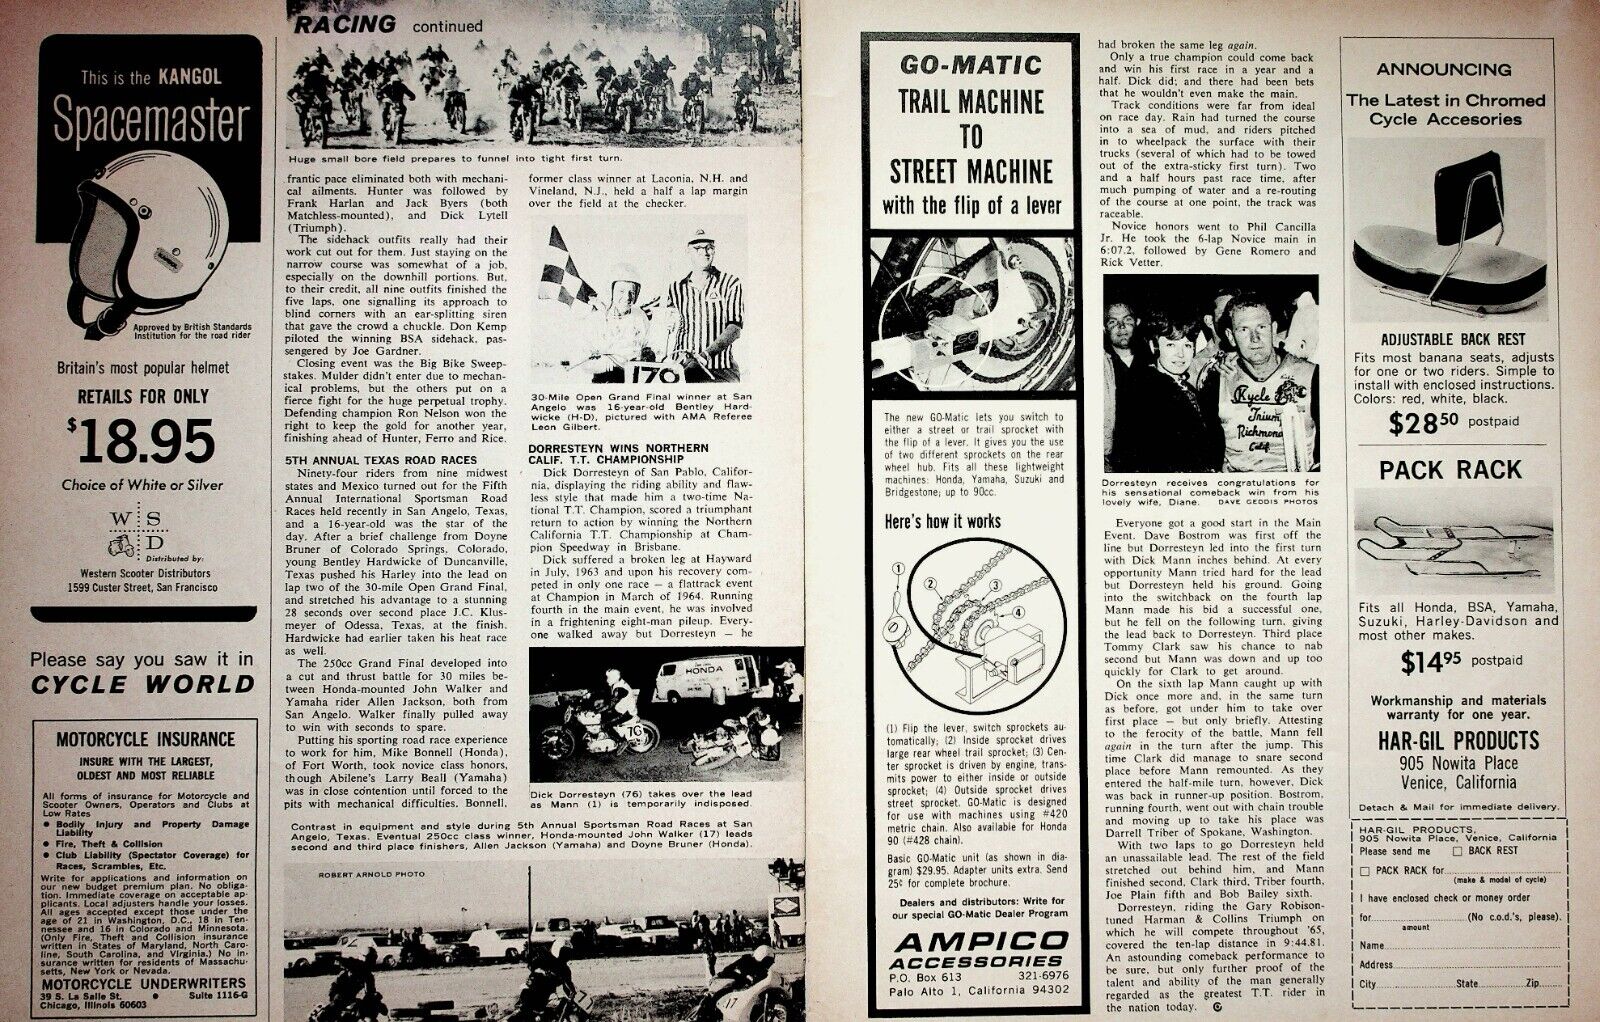 1965 Dick Dorresteyn Wins TT Race - 2-Page Vintage Motorcycle Racing Article